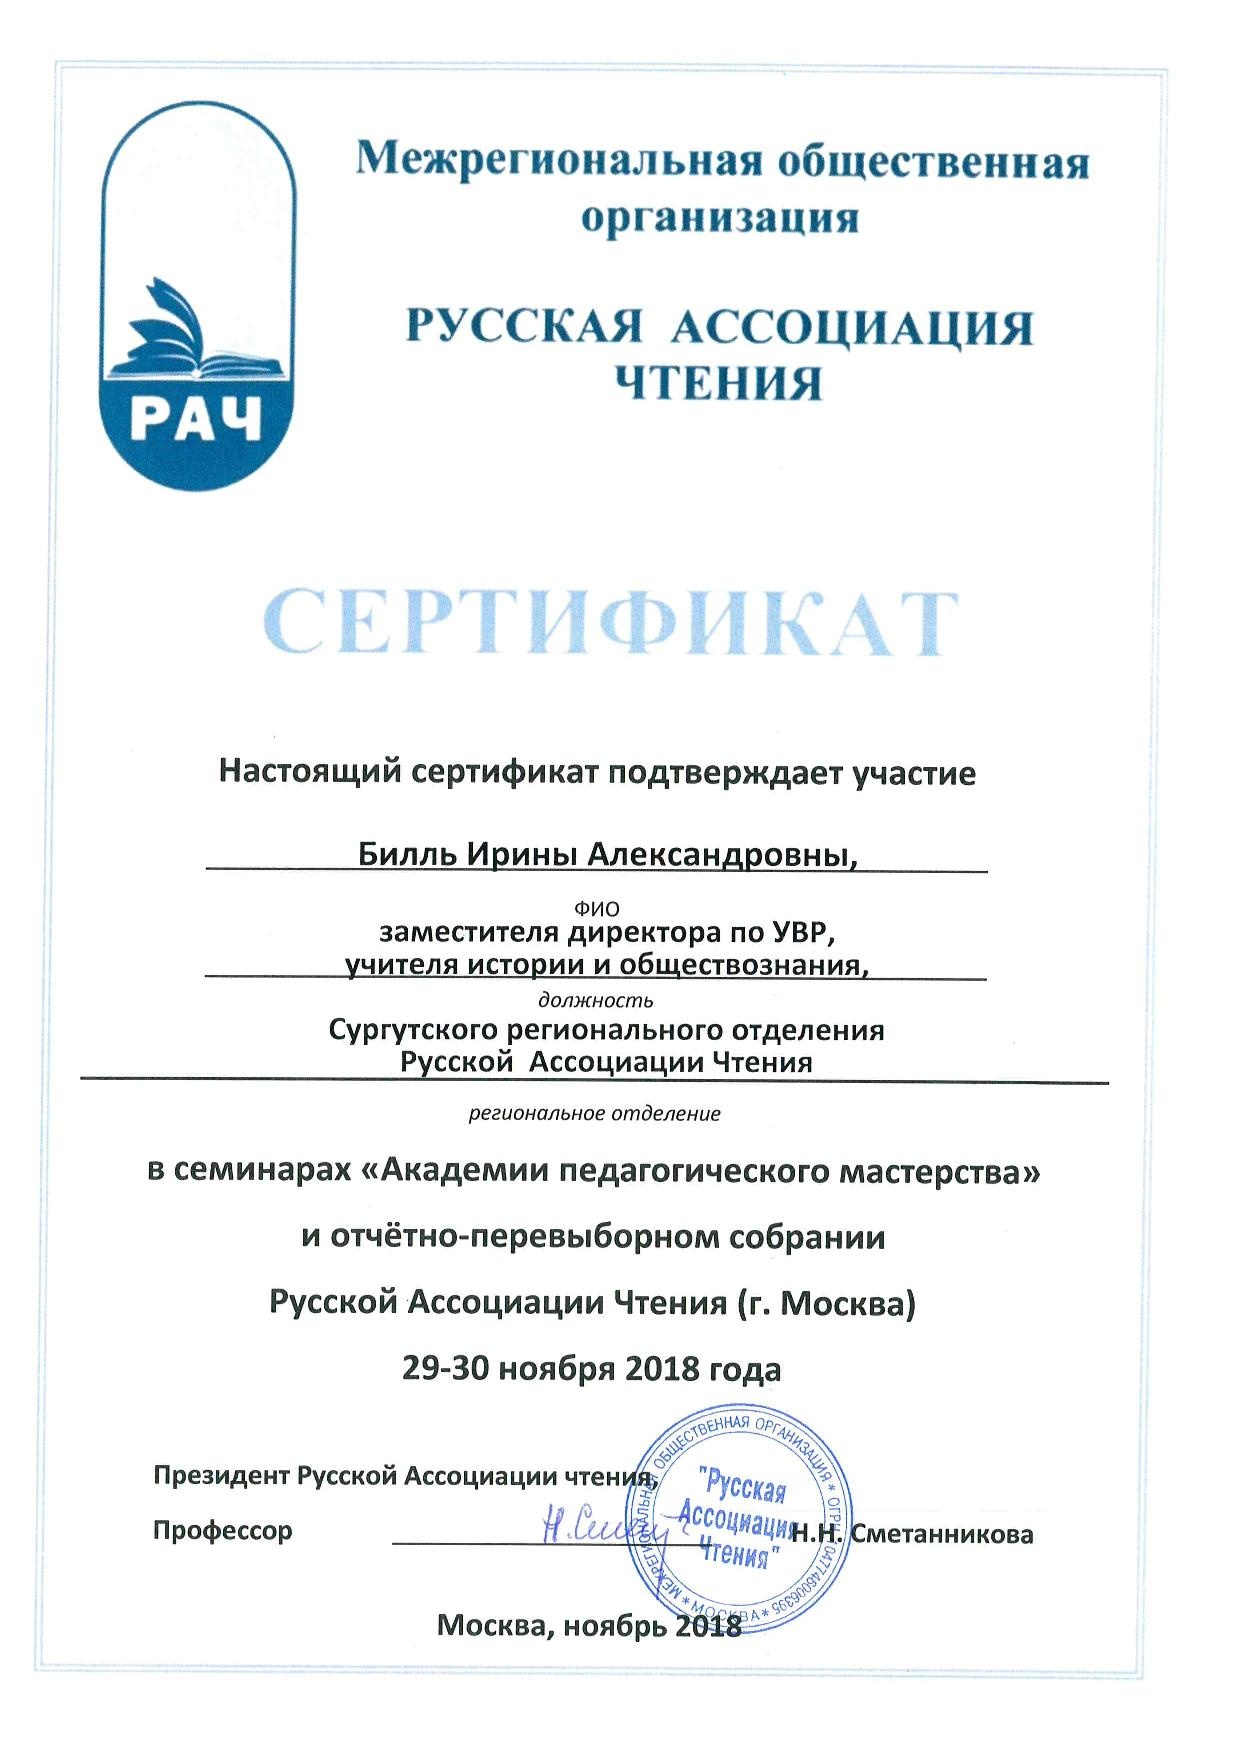 Сертификат участника русской ассоциации чтения